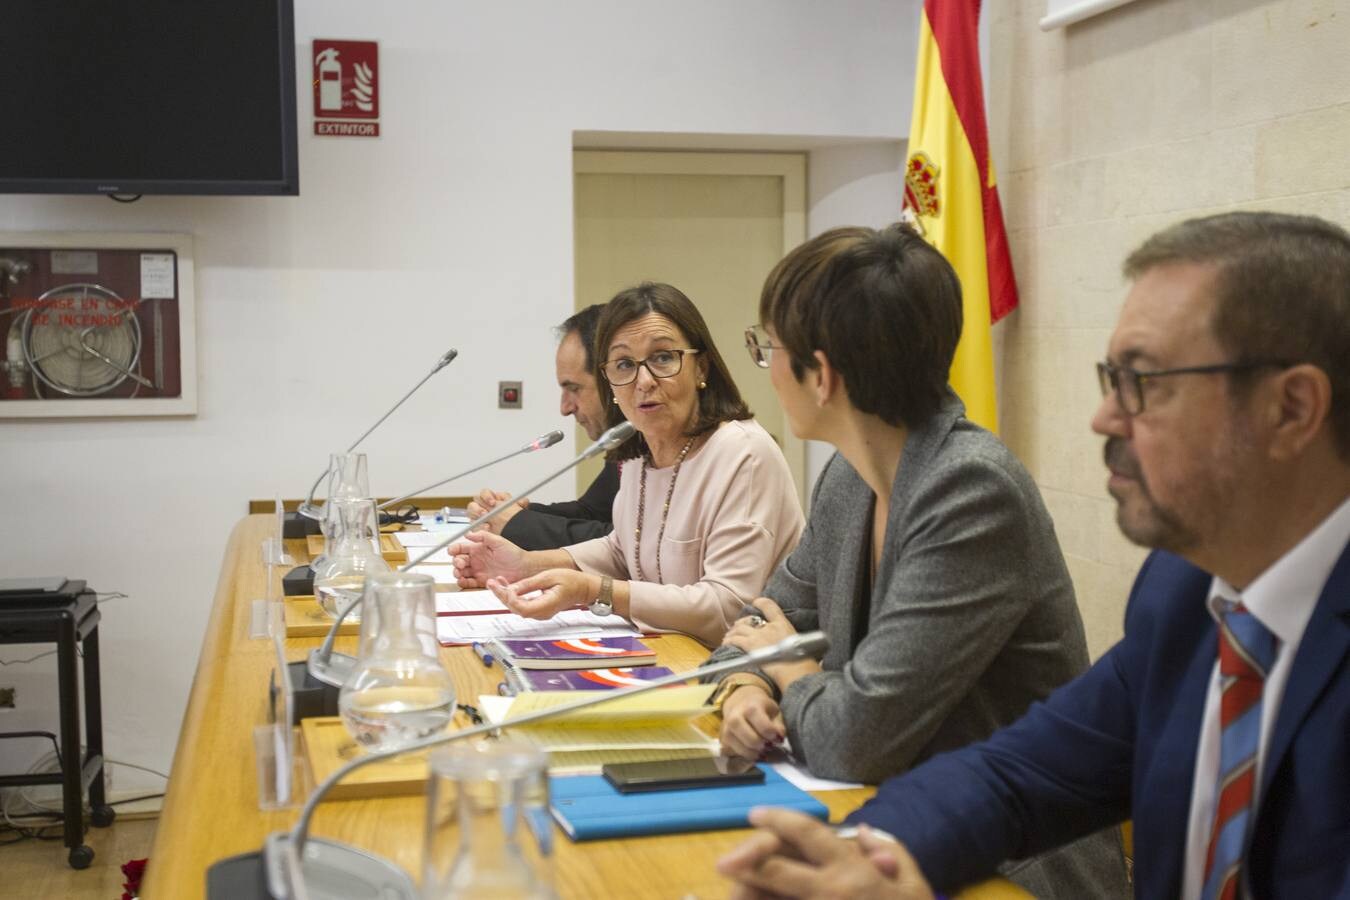 Veinte letrados, profesores universitarios y representantes políticos procedentes de diversos puntos de la geografía española debaten sobre la reforma de la Constitución con motivo de su 40 aniversario en el Parlamento de Cantabria